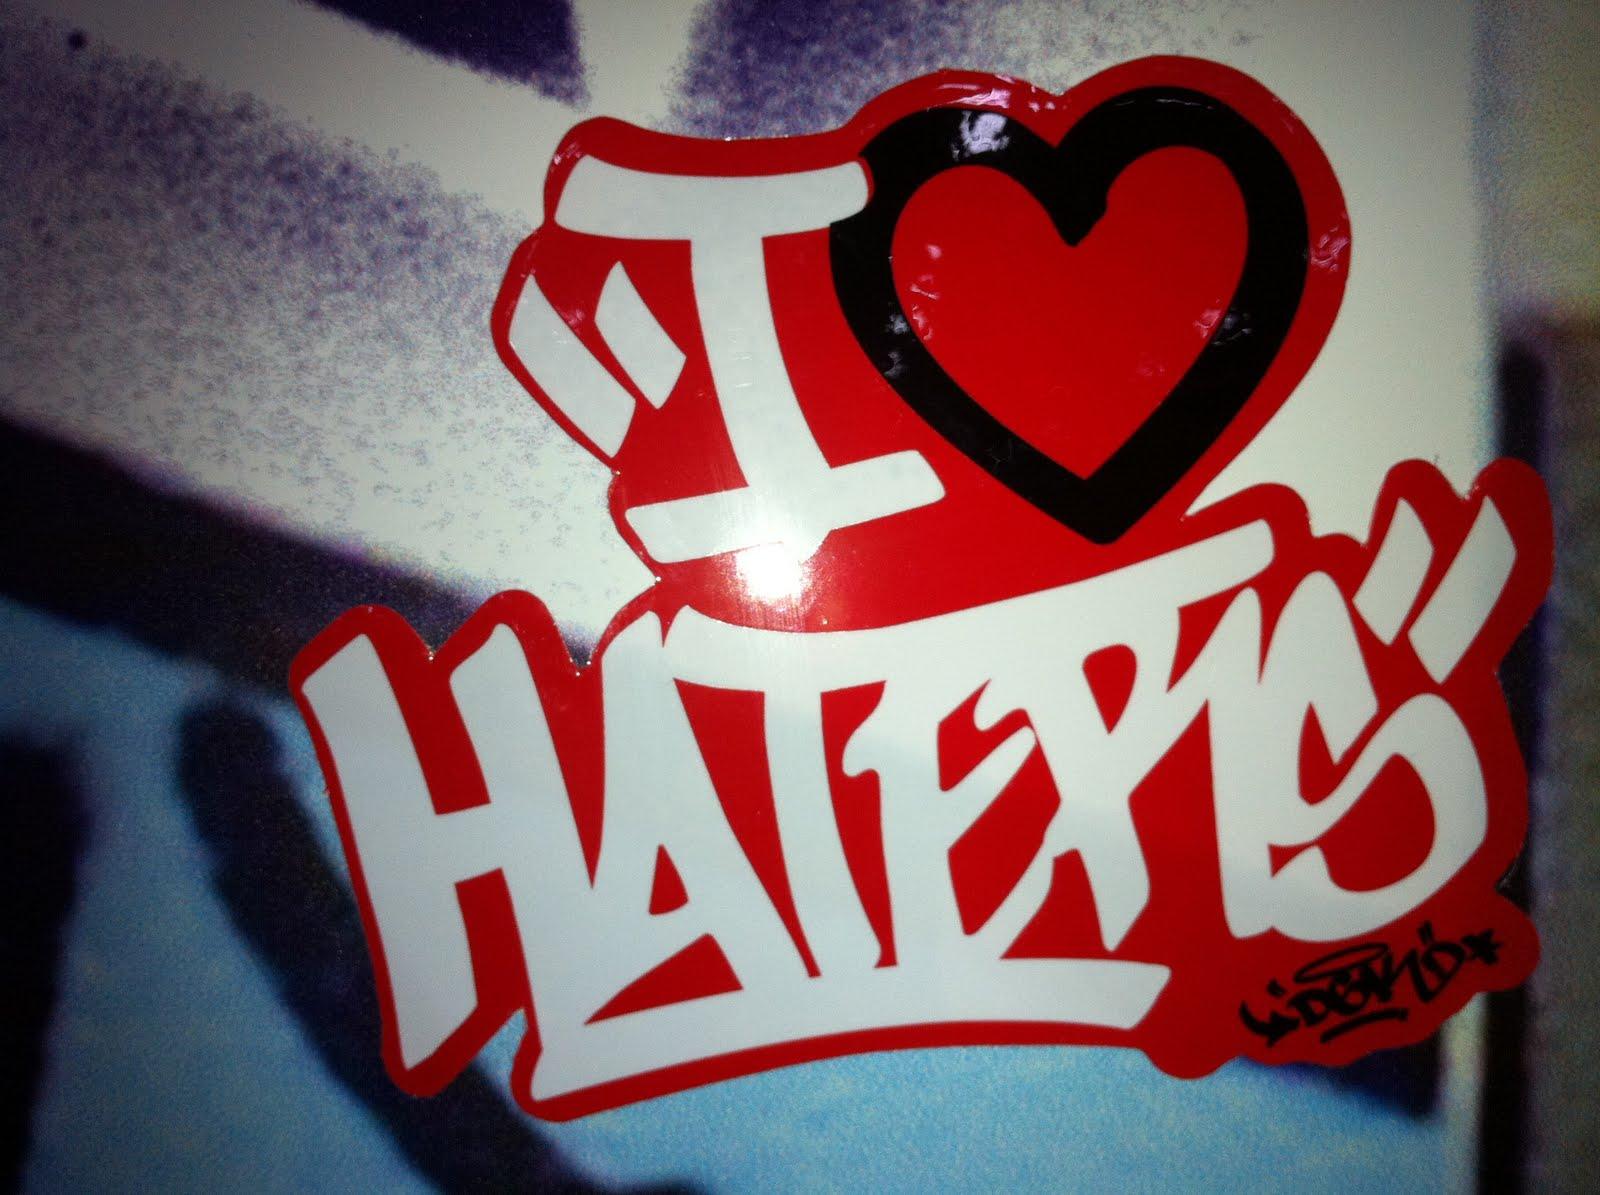 Jeff Decker: I LOVE HATERS